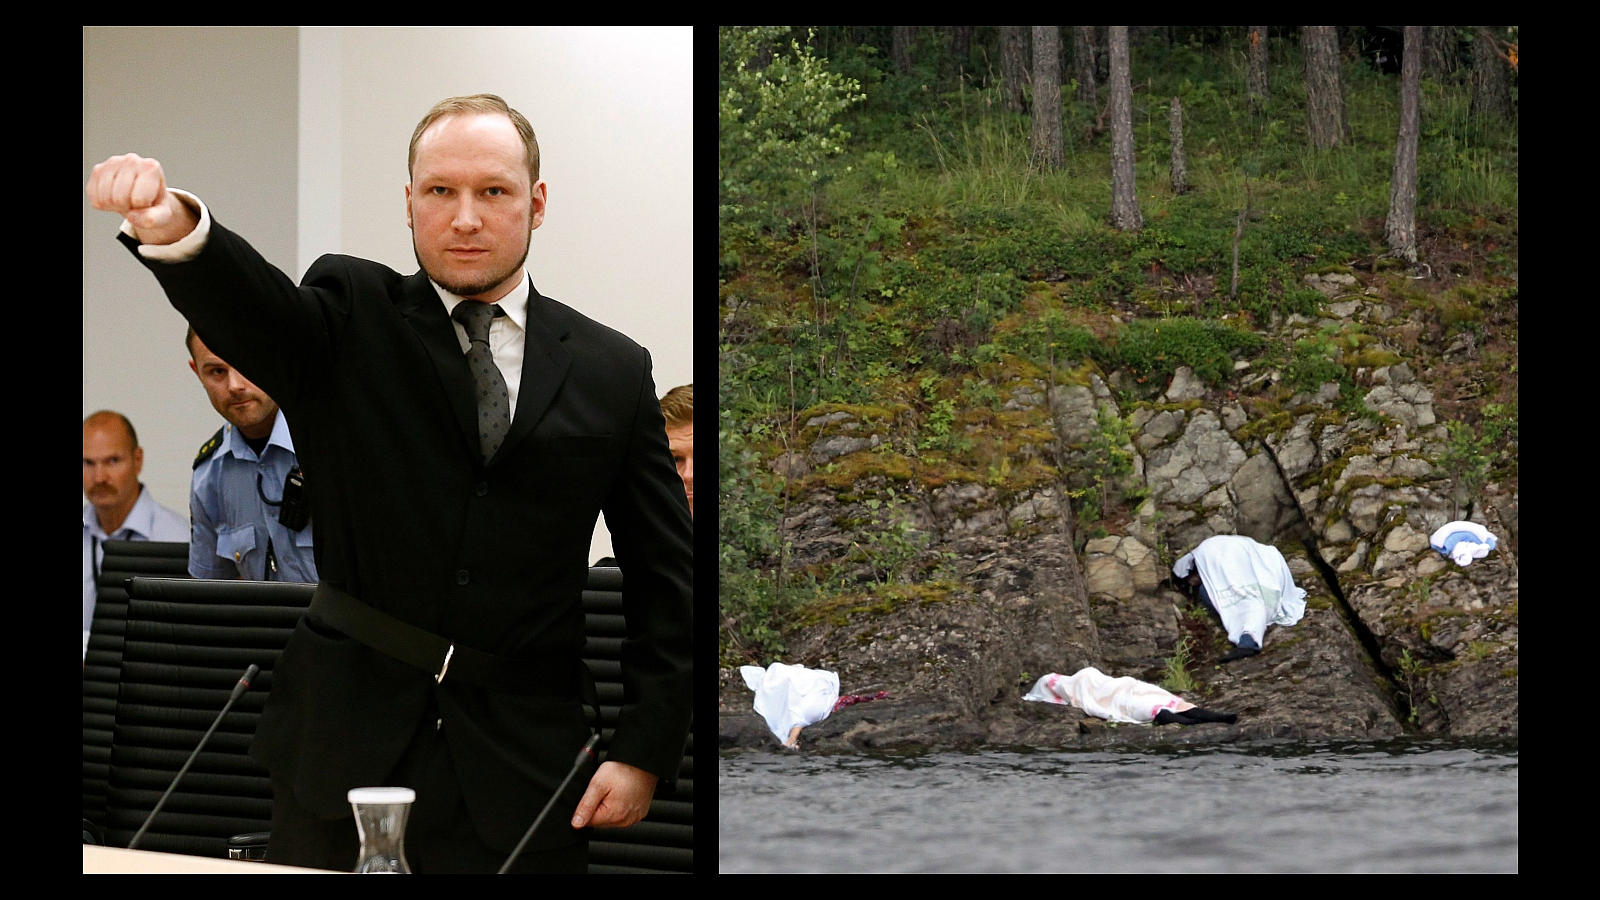 El 22 de julio de 2011, un extremista de extrema derecha, Anders Behring Breivik, hizo estallar una bomba en la sede del gobierno en Oslo, causando la muerte de ocho personas. Luego mató a 69 personas, en su mayoría adolescentes, en la isla de Utoya. Breivik fue detenido y condenado a 21 años de cárcel, la pena máxima en Noruega, que puede ser prolongada indefinidamente si se considera que sigue siendo peligroso para la sociedad